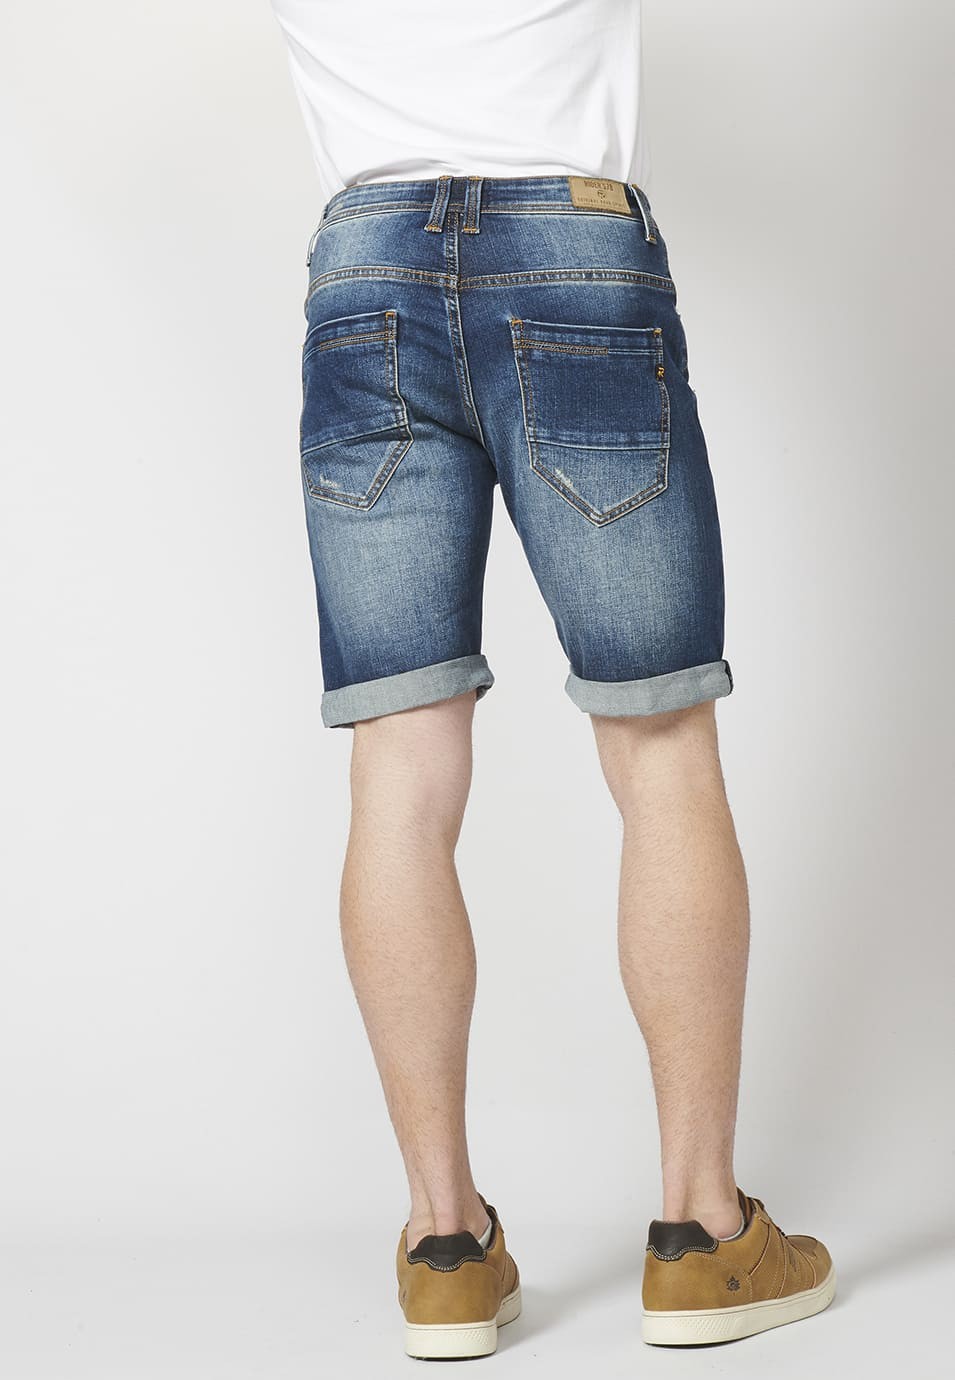 Pantalon corto denim regular fit con cinco bolsillos y efecto gastado para Hombre 4